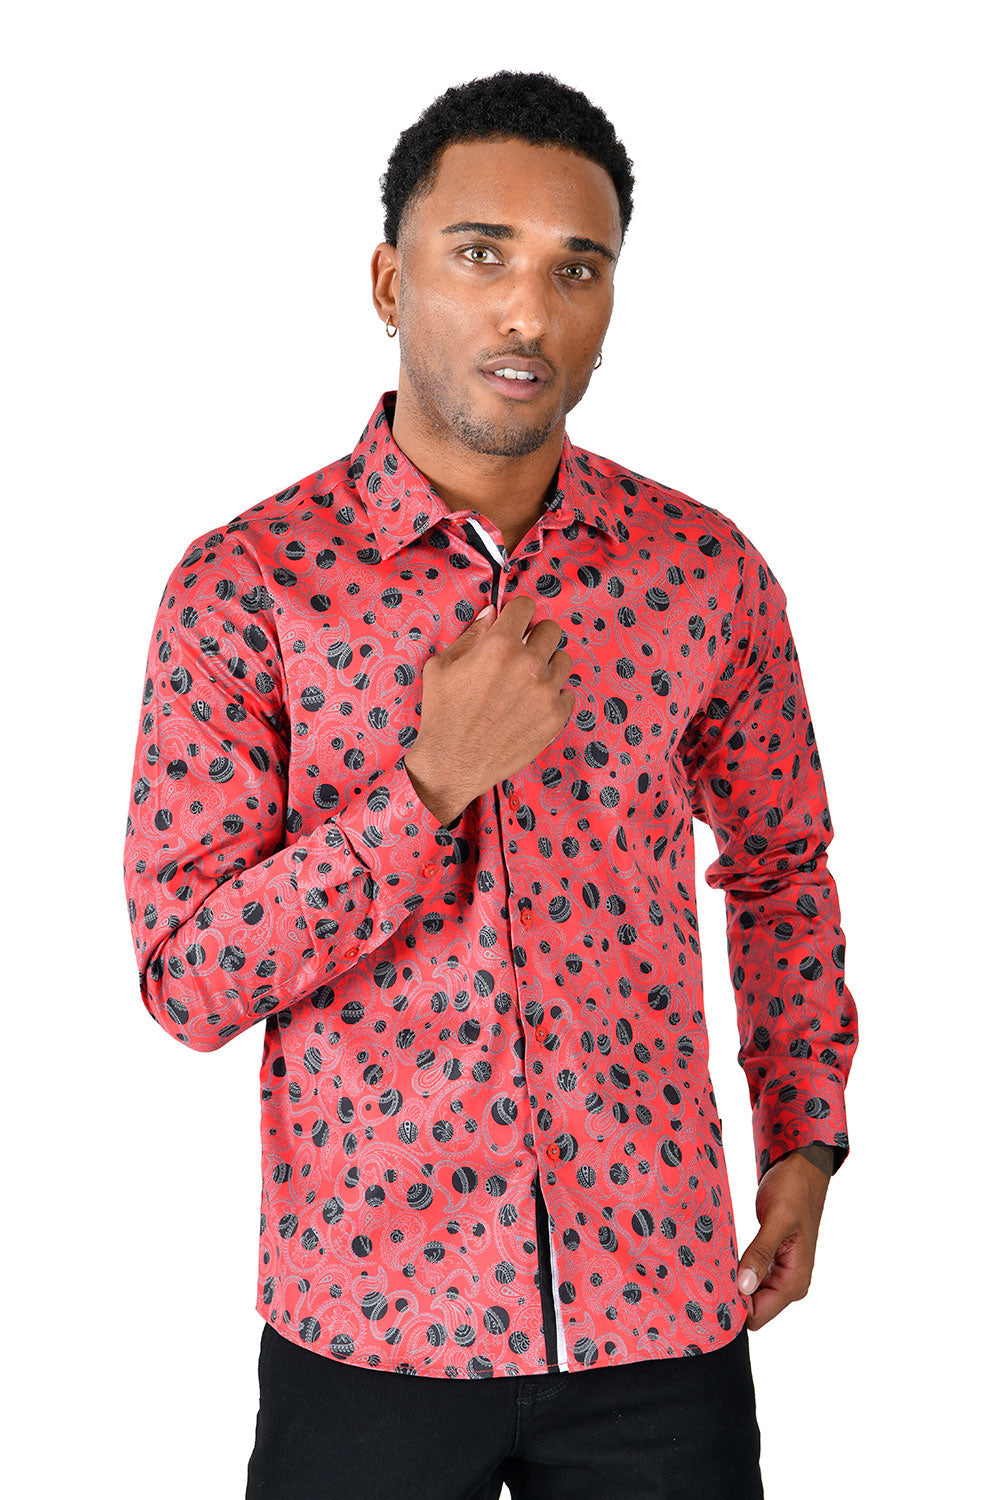 BARABAS men's floral paisley polka dotted printed shirts B339 Red black